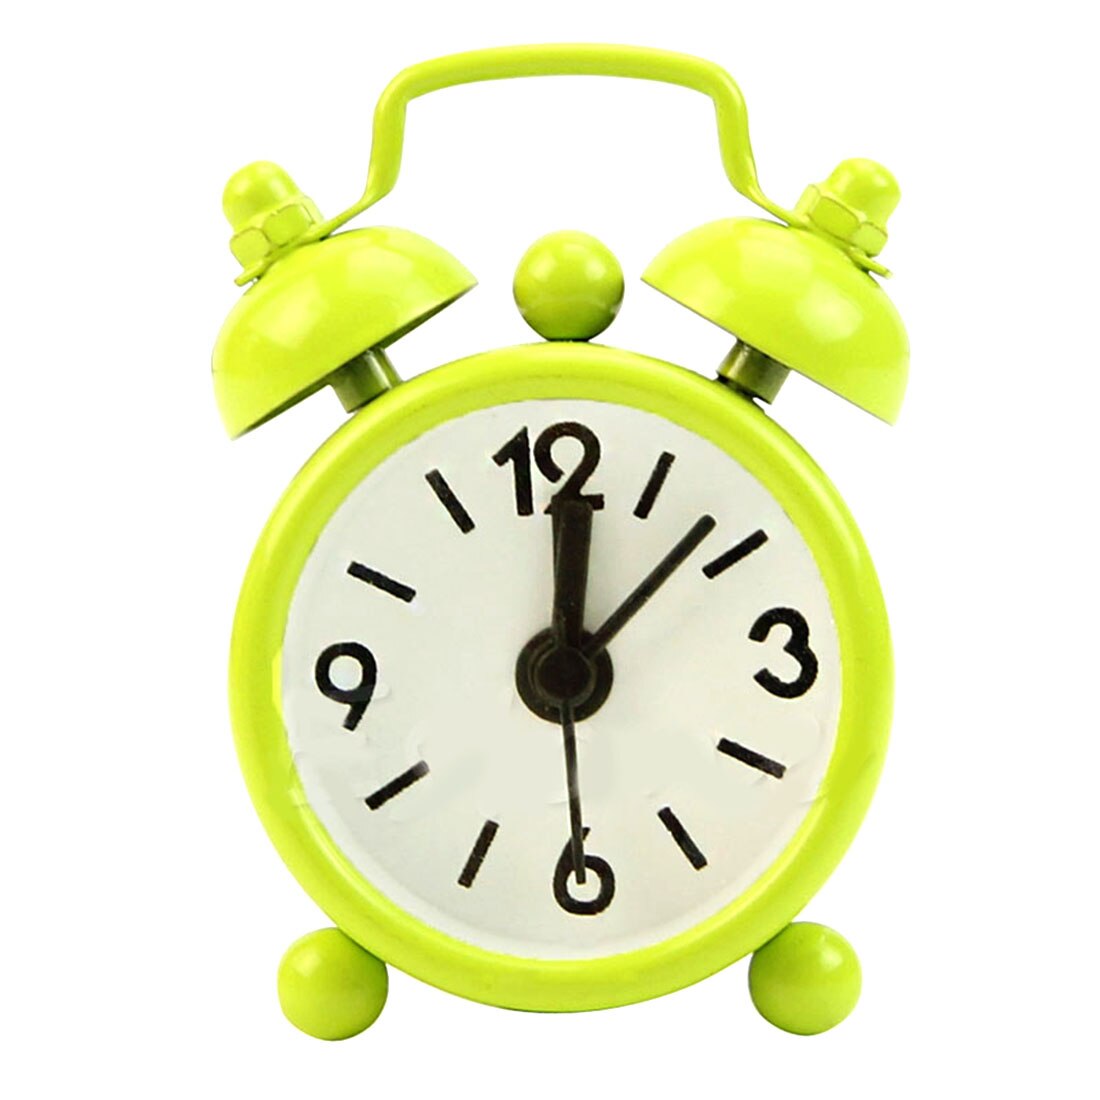 Di modo Nuova Casa Esterno Portatile Sveglio Bello Del Fumetto Quadrante Numero Tondo Desk Alarm Clock Mini: green